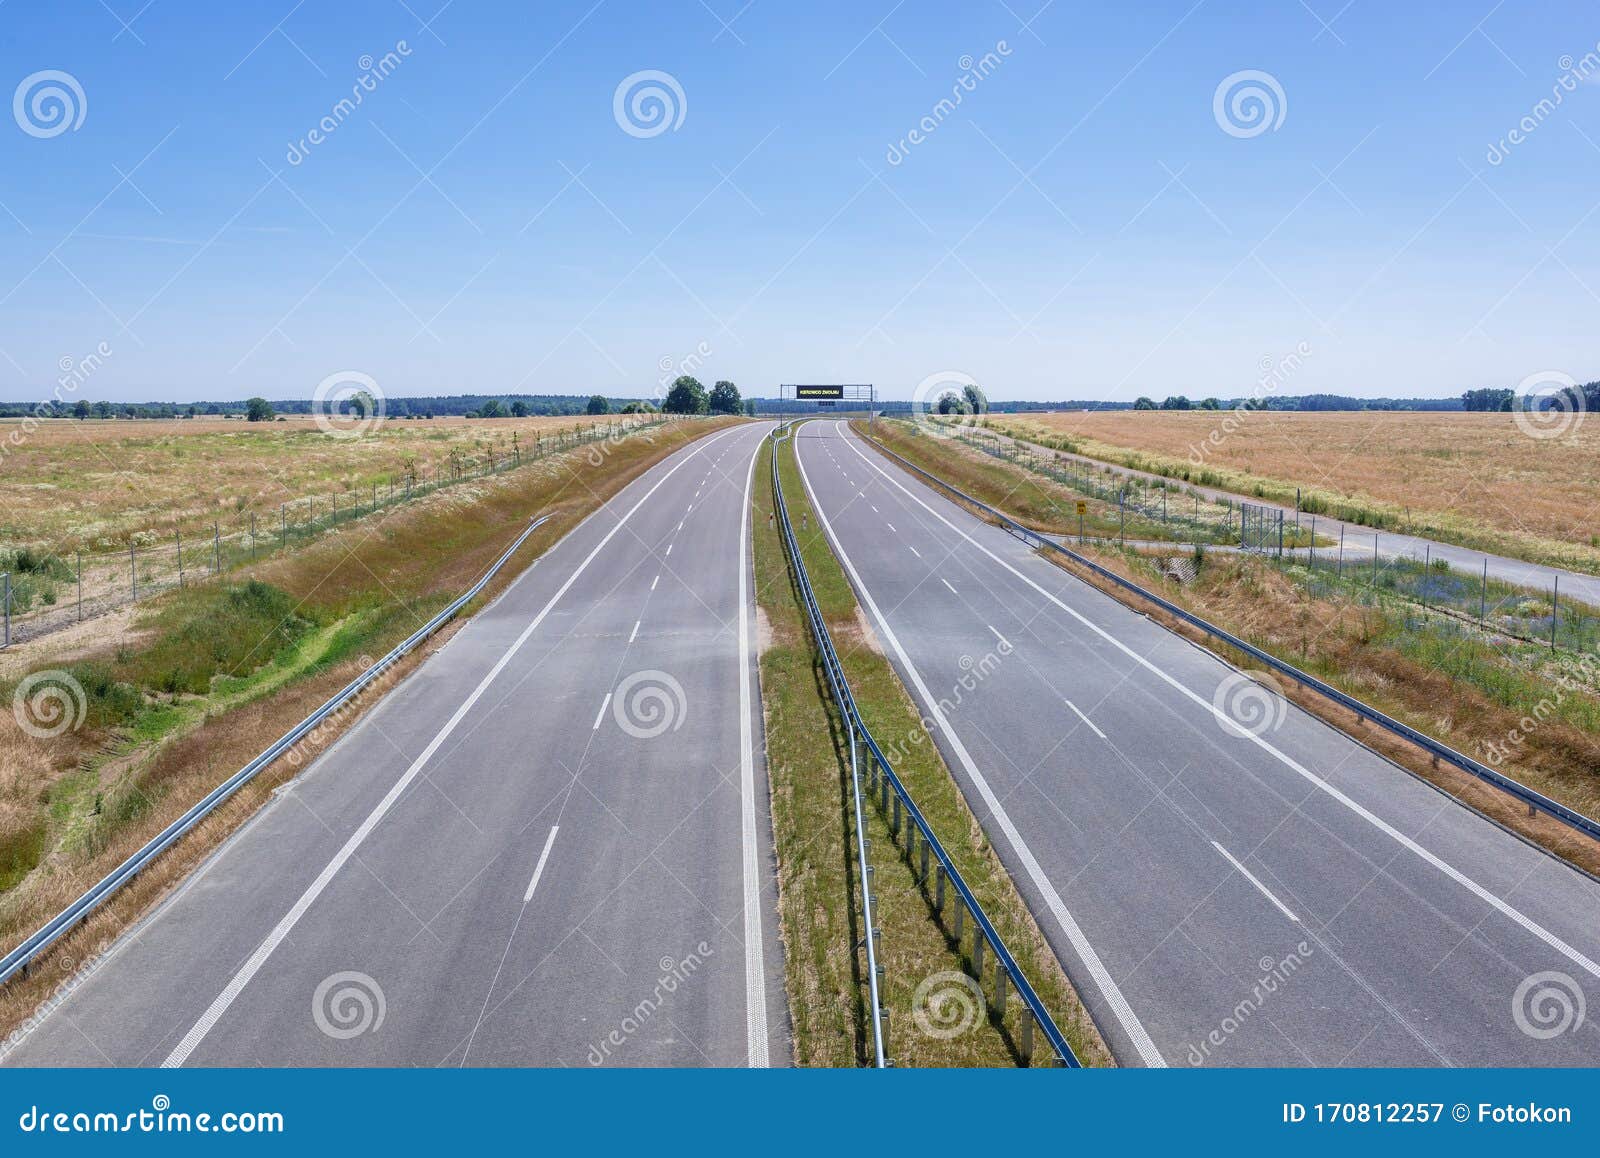 expressway in poland